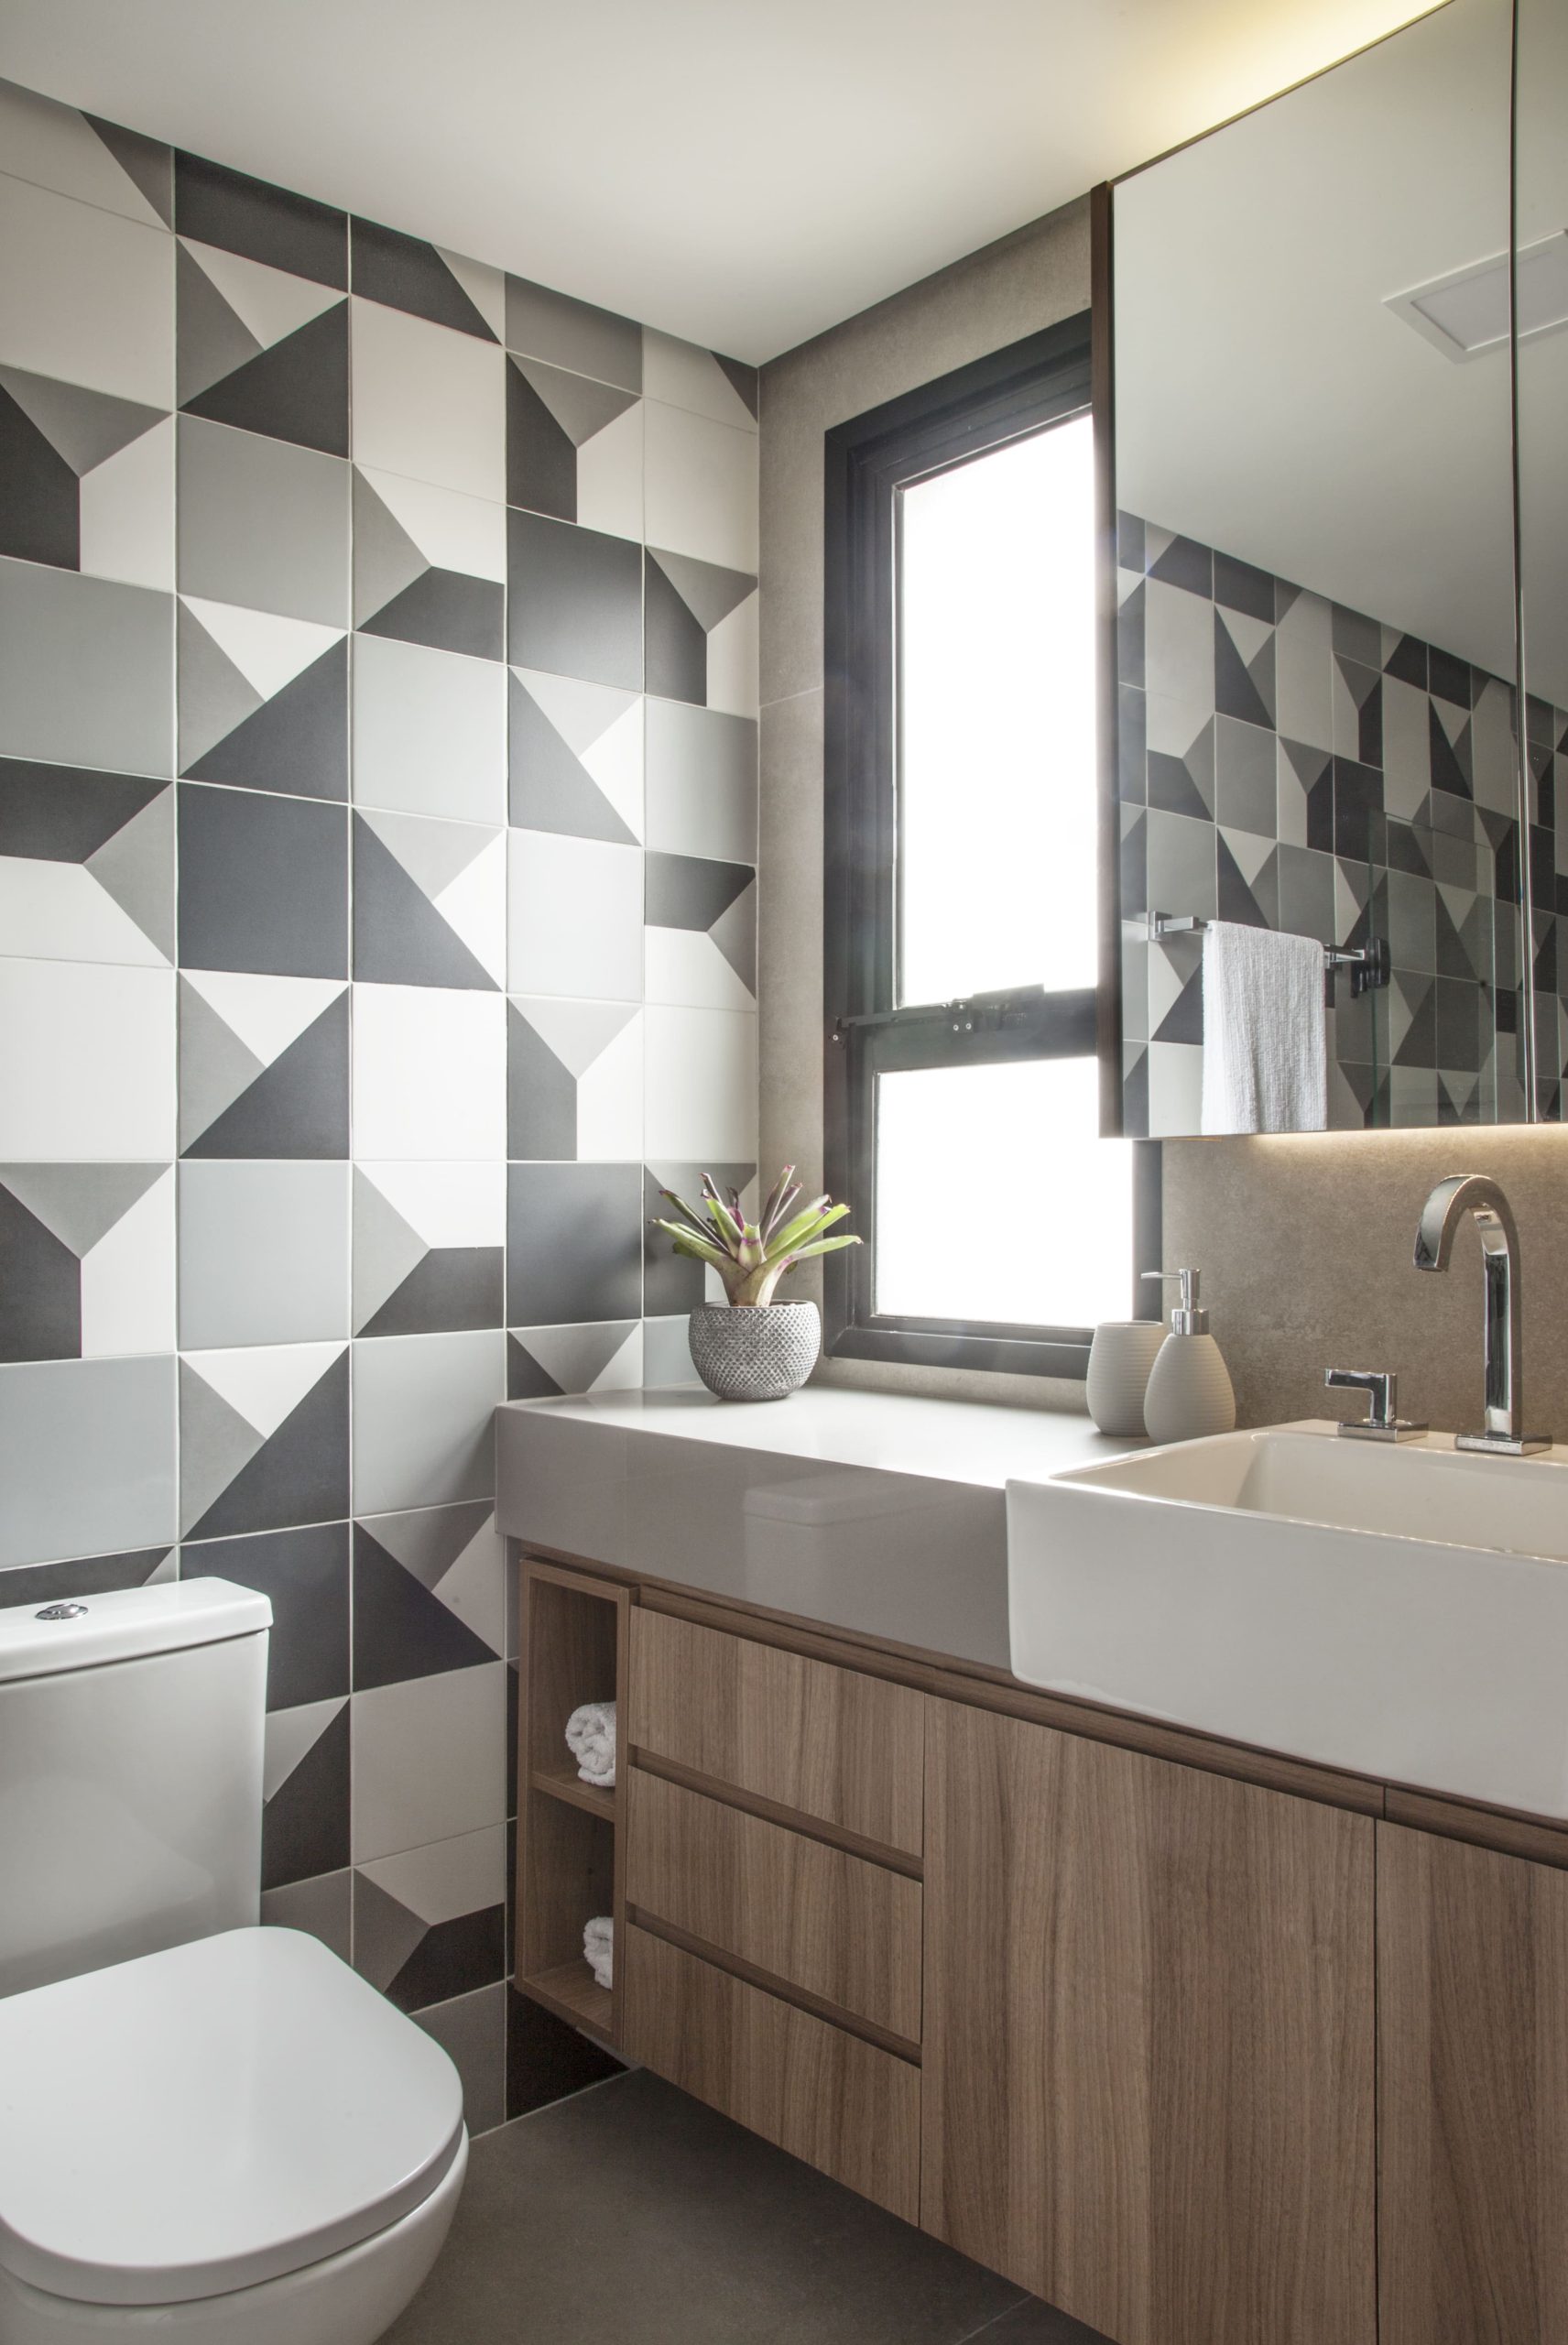 banheiro com piso de porcelanato cinza e revestimentos cerâmicos com vários tons de cinza